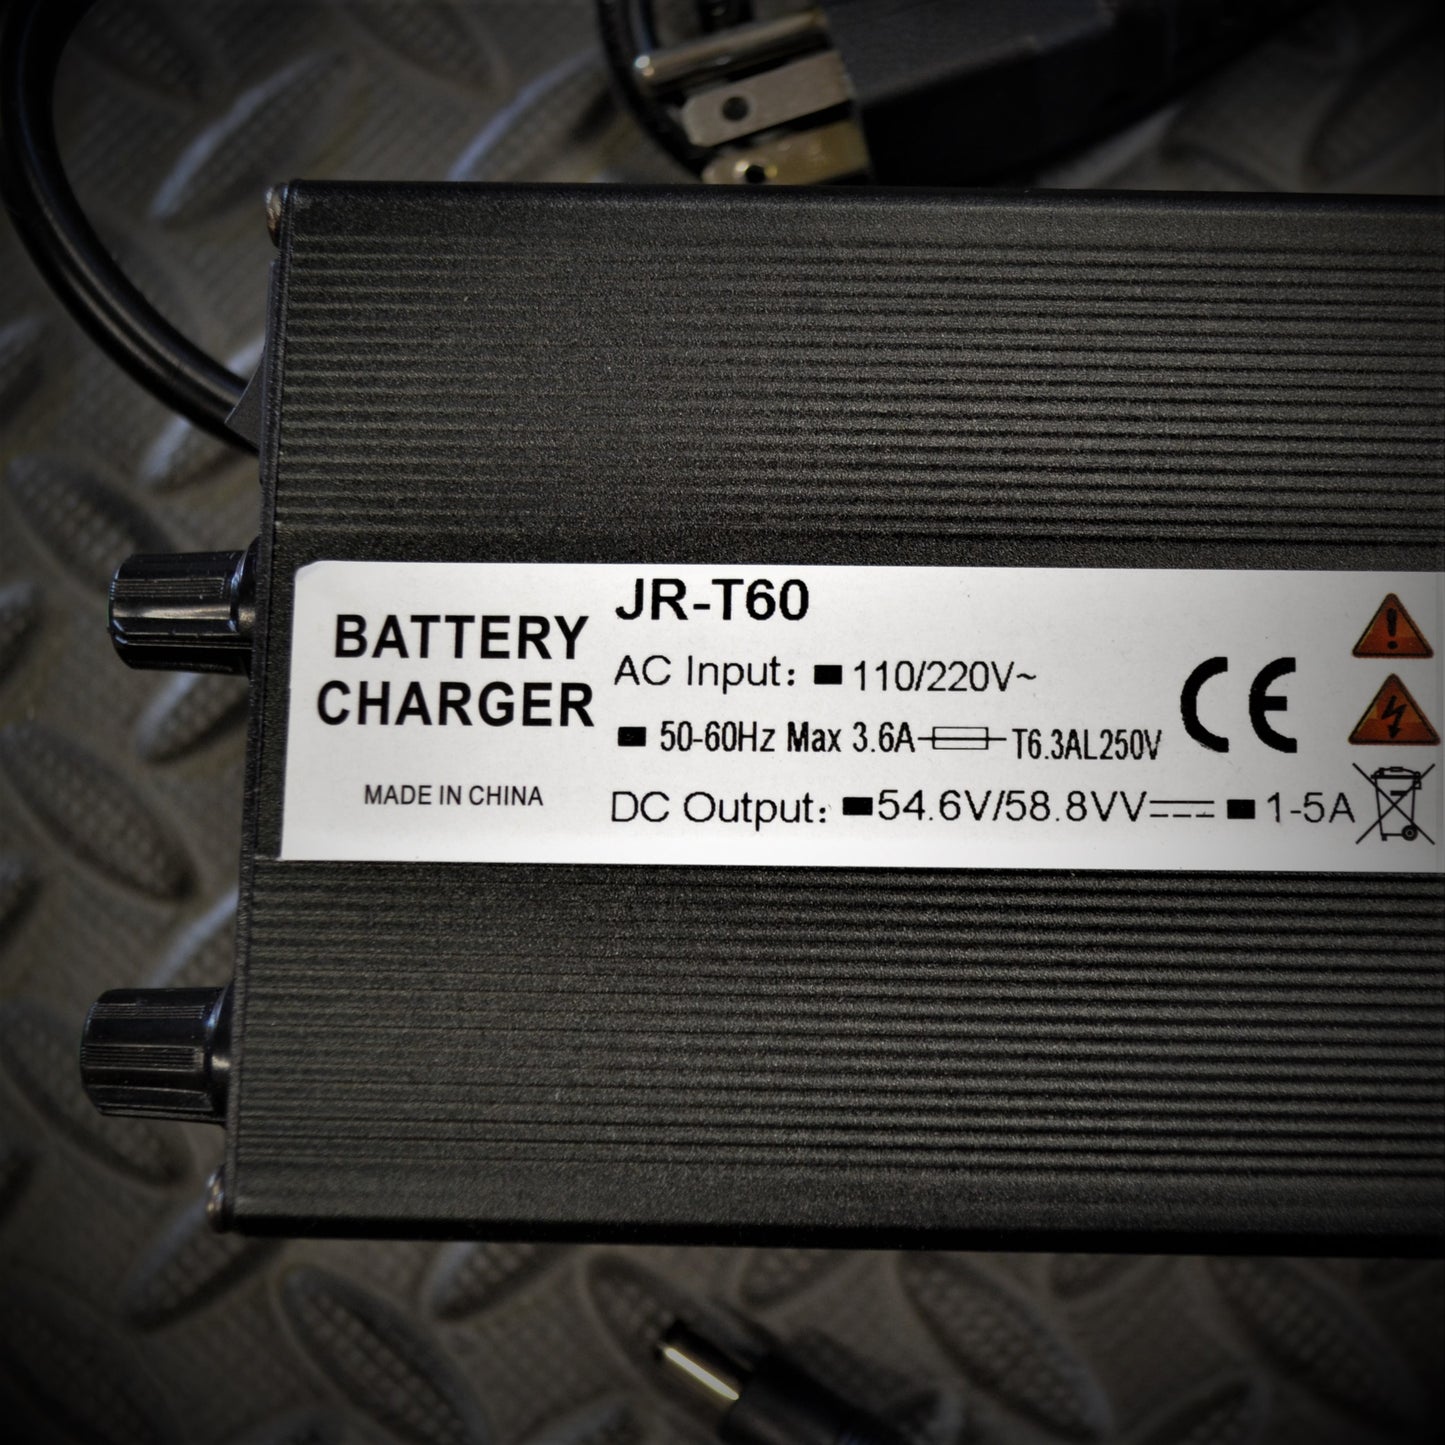 Smart Charger - 48/52V - Adjustable Current and Voltage